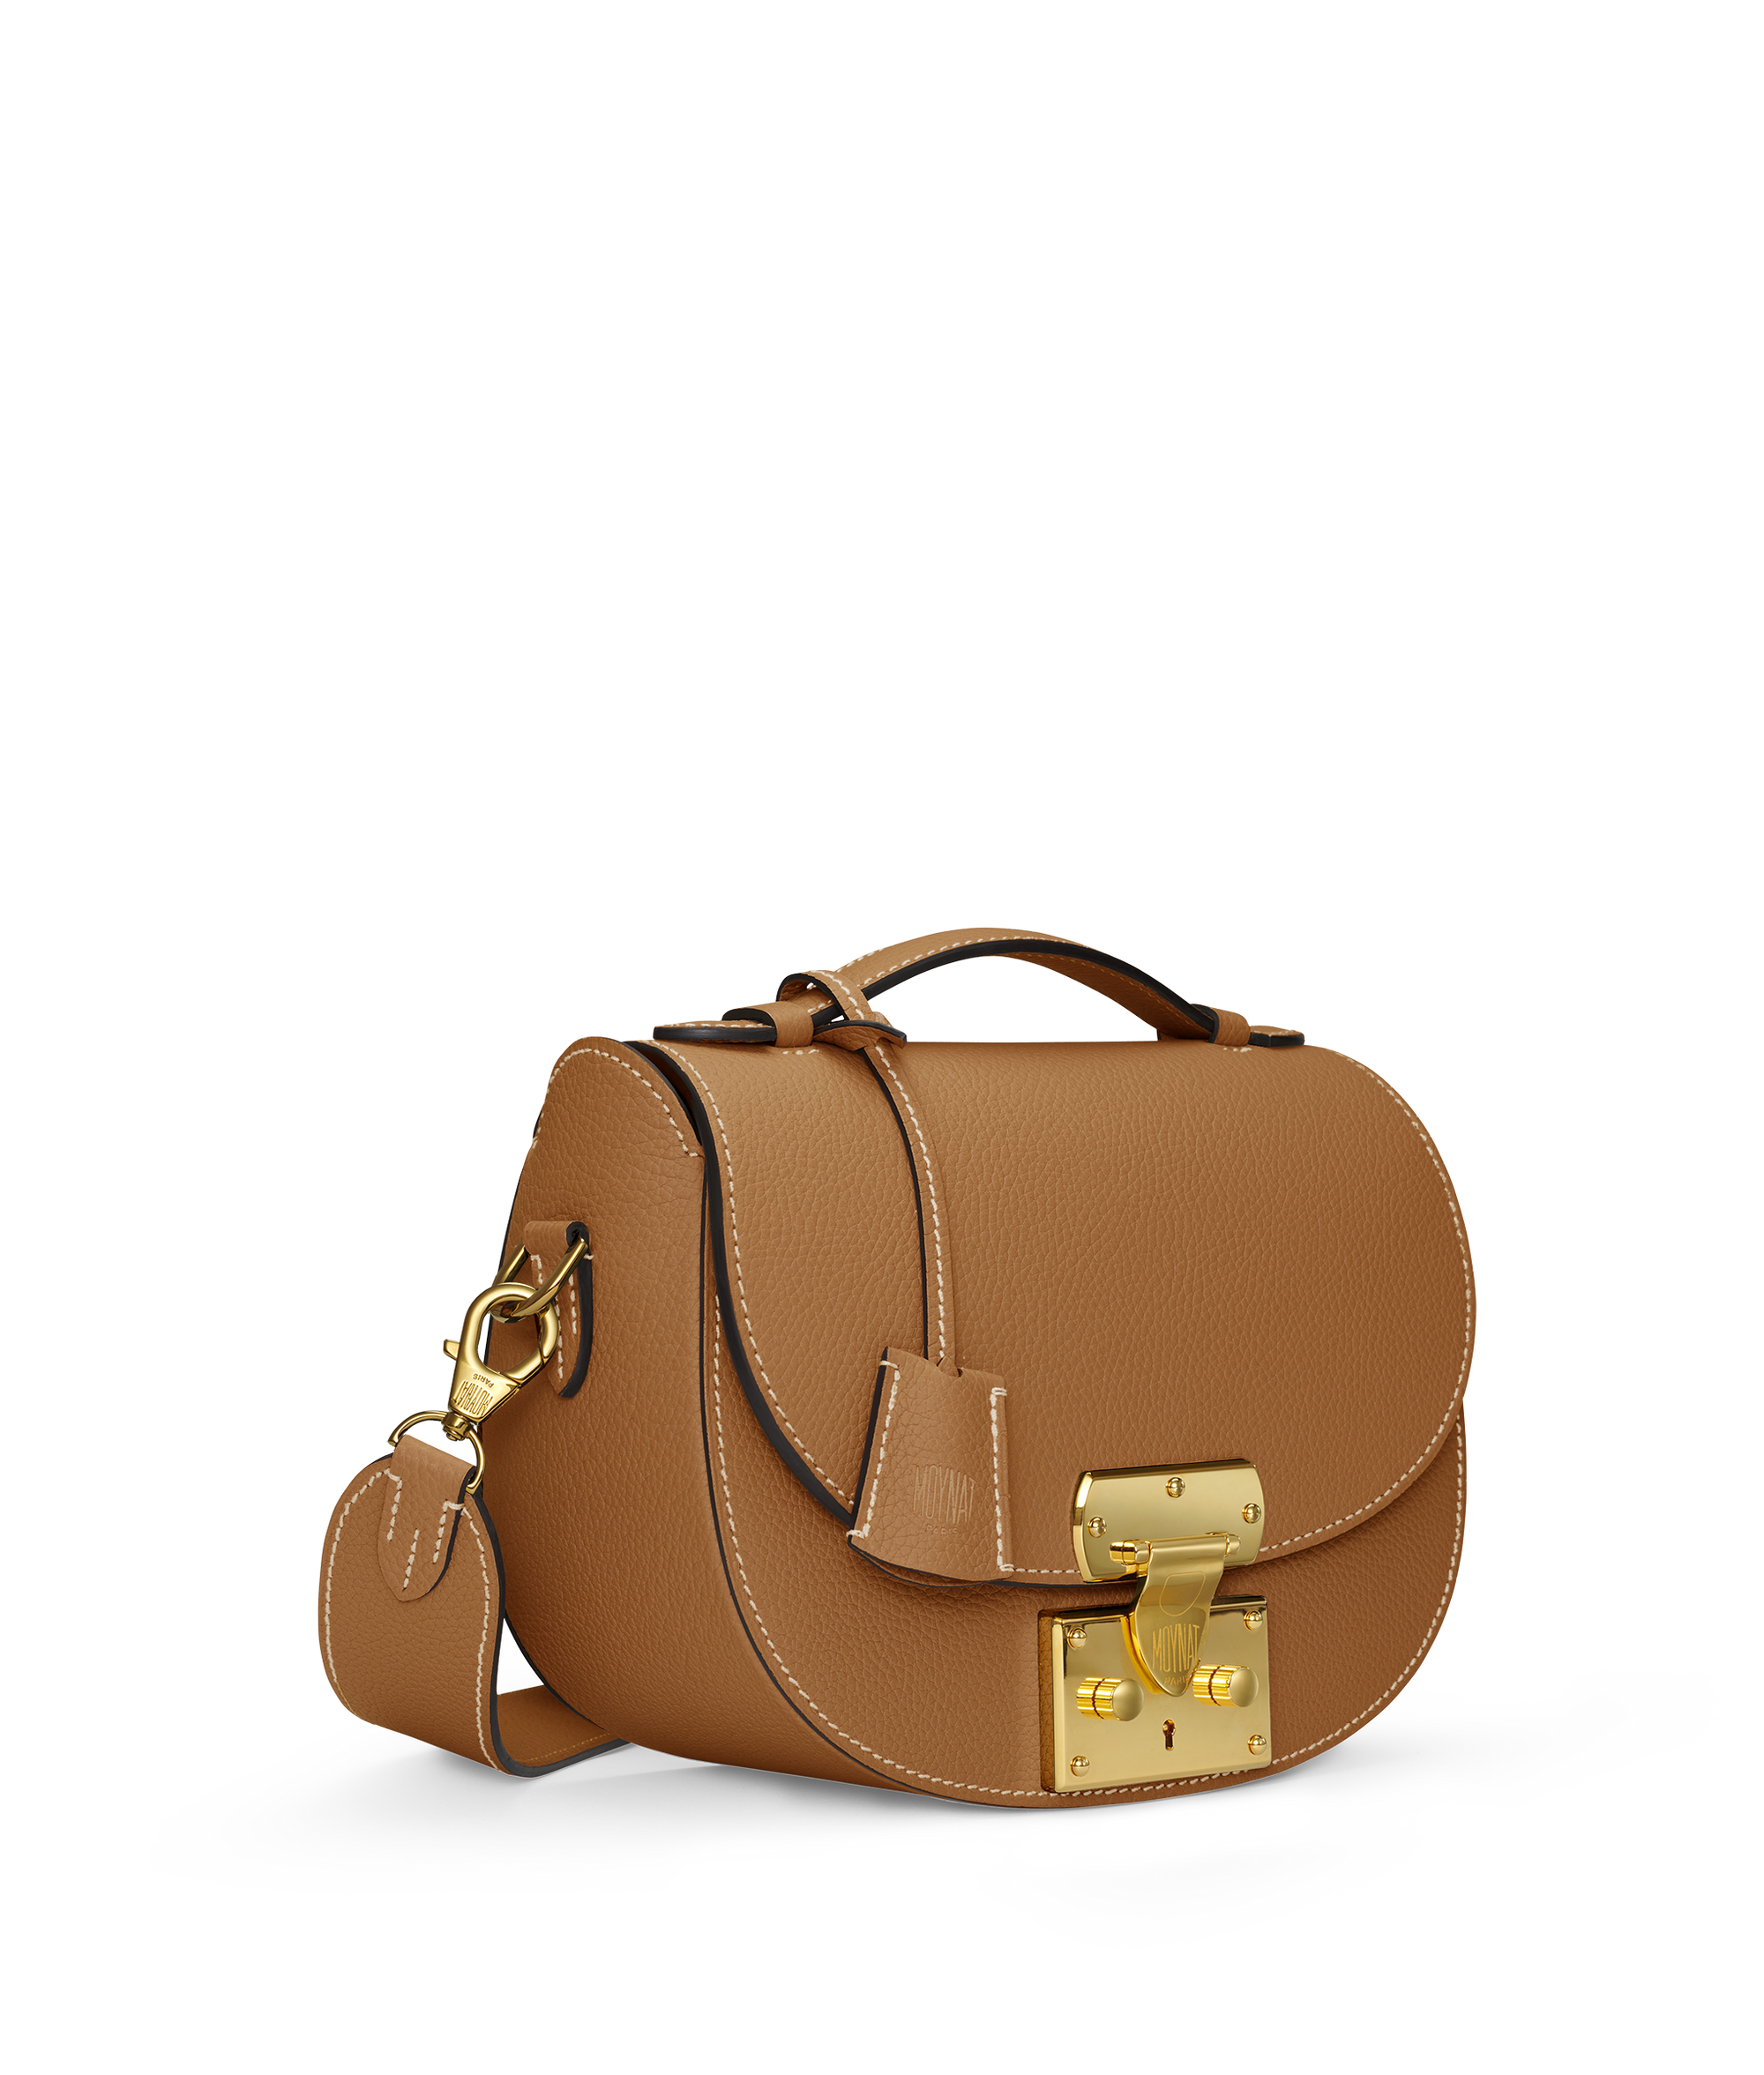 Moynat Paris - Flori PM Handbag - Orange - in Leather - Luxury